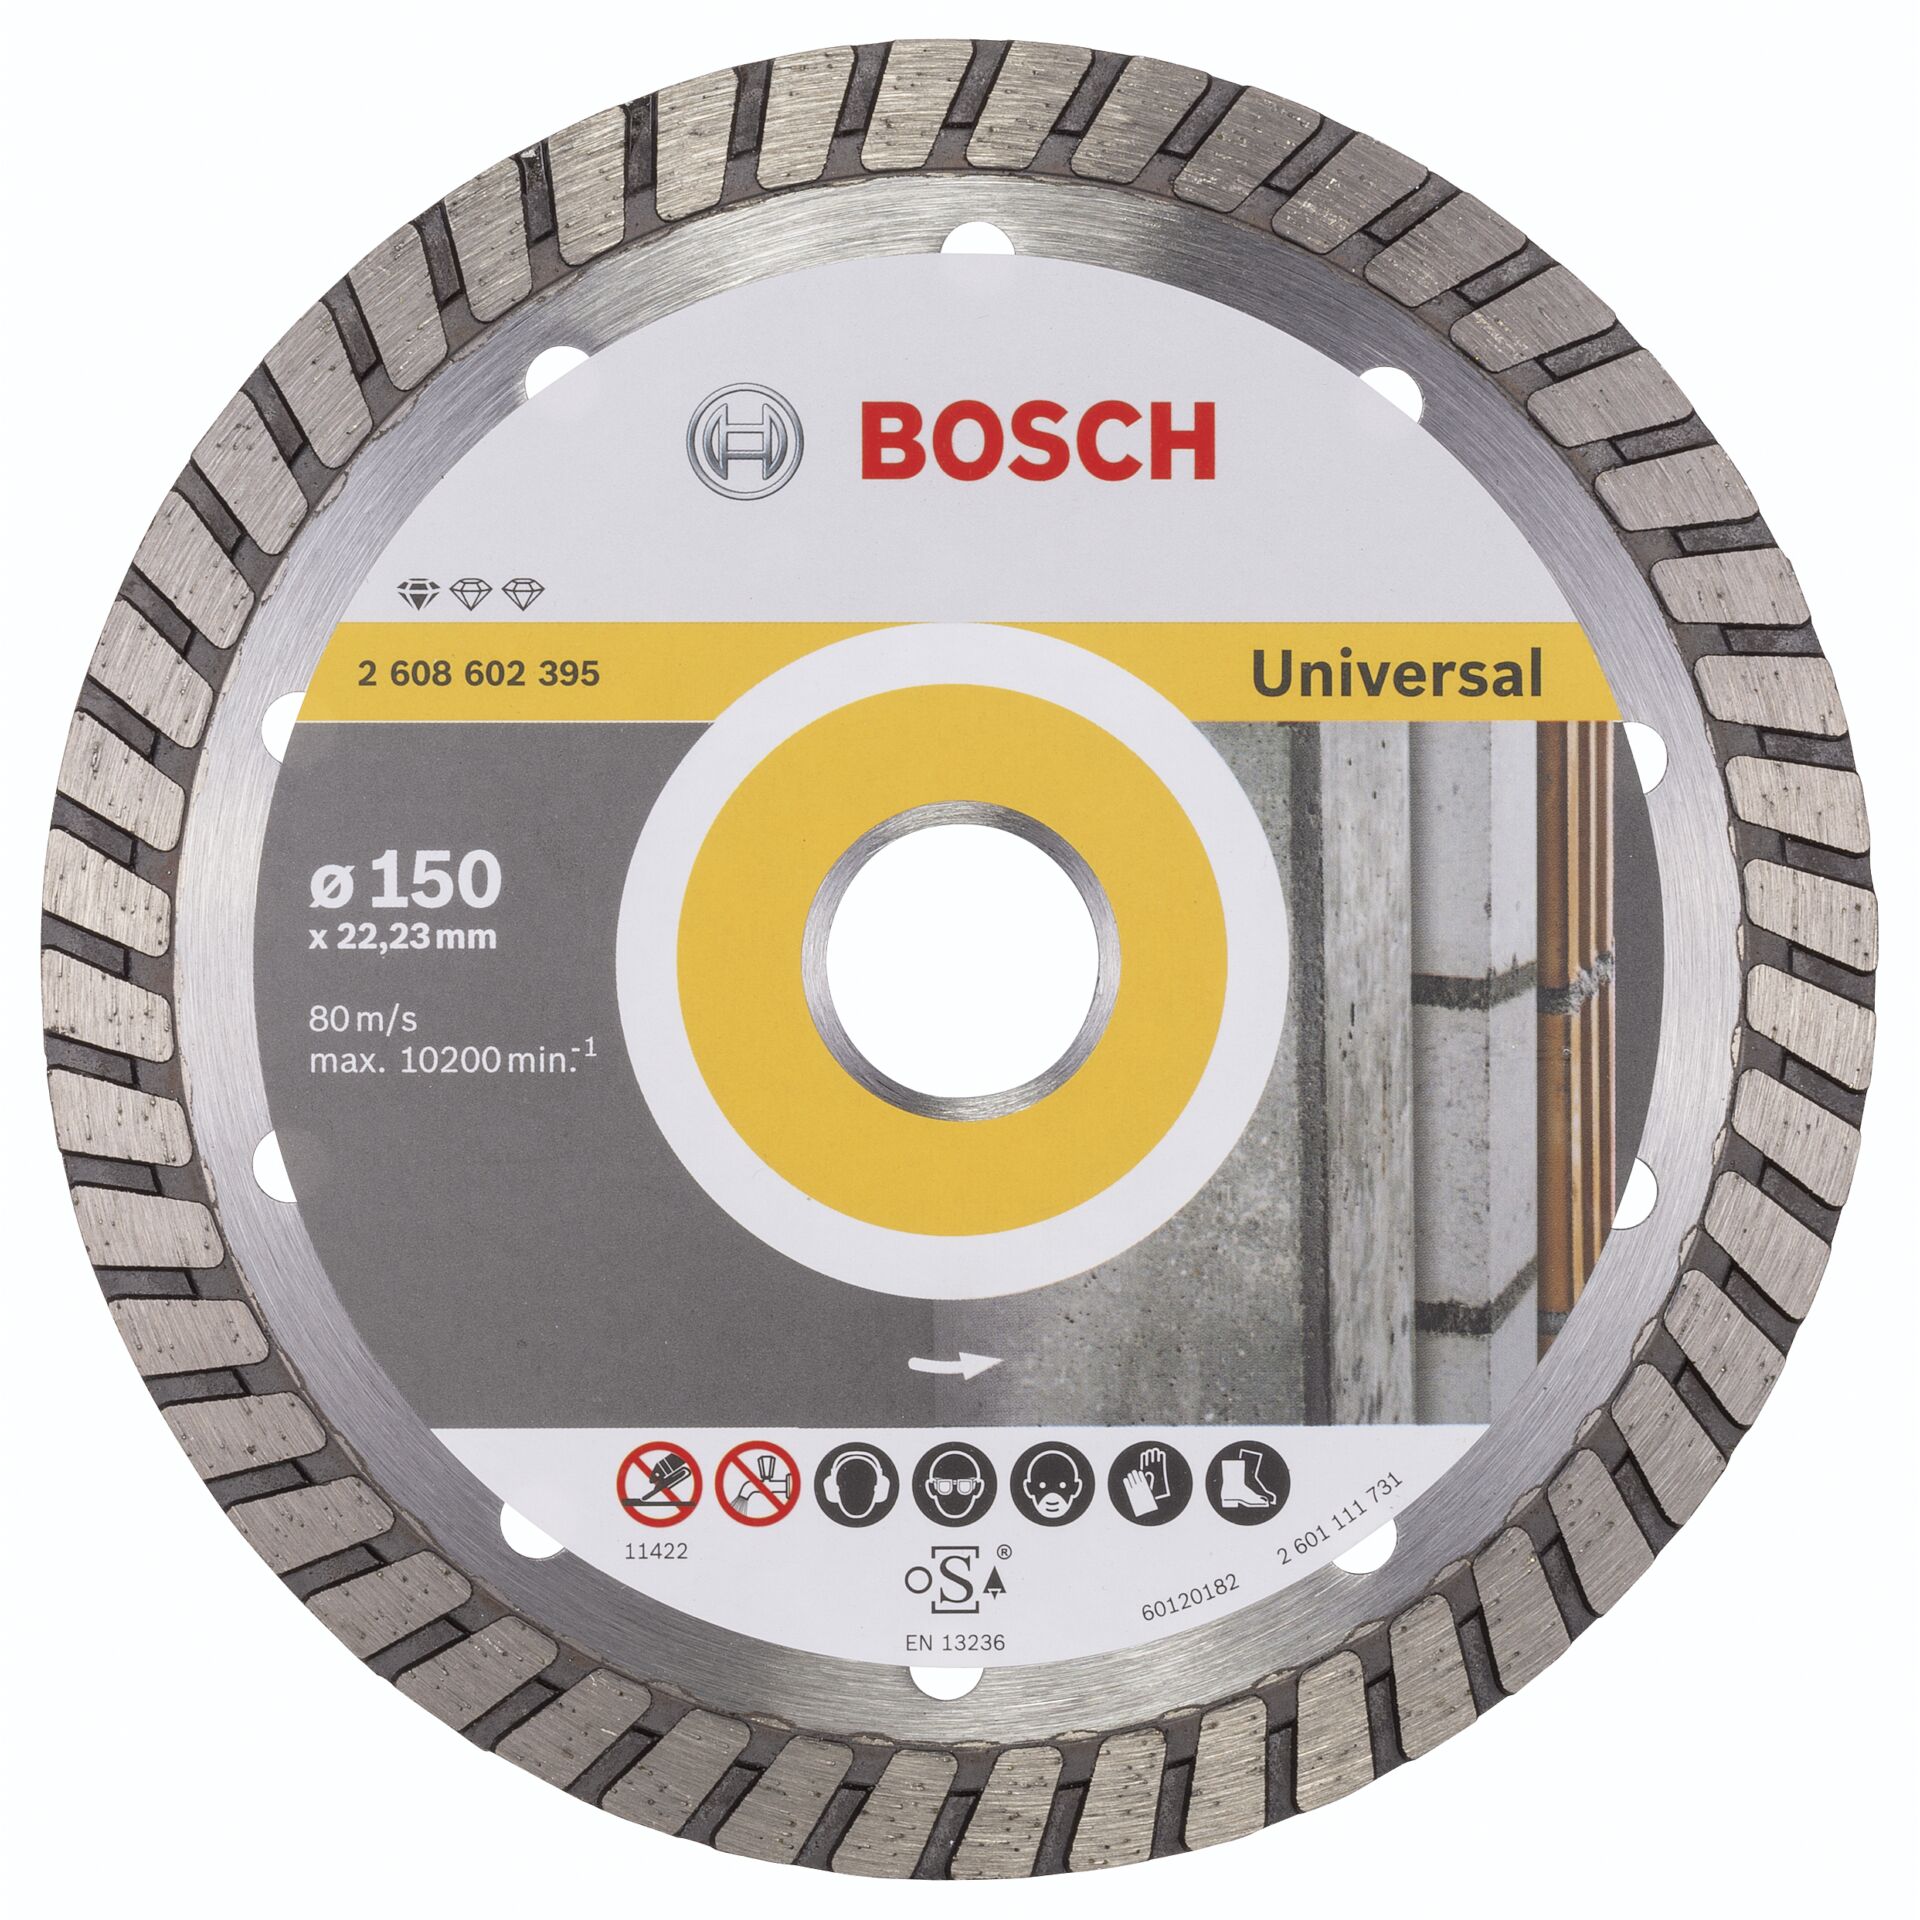 Bosch DIA-TS 150x22,23 Std. Universal Turbo